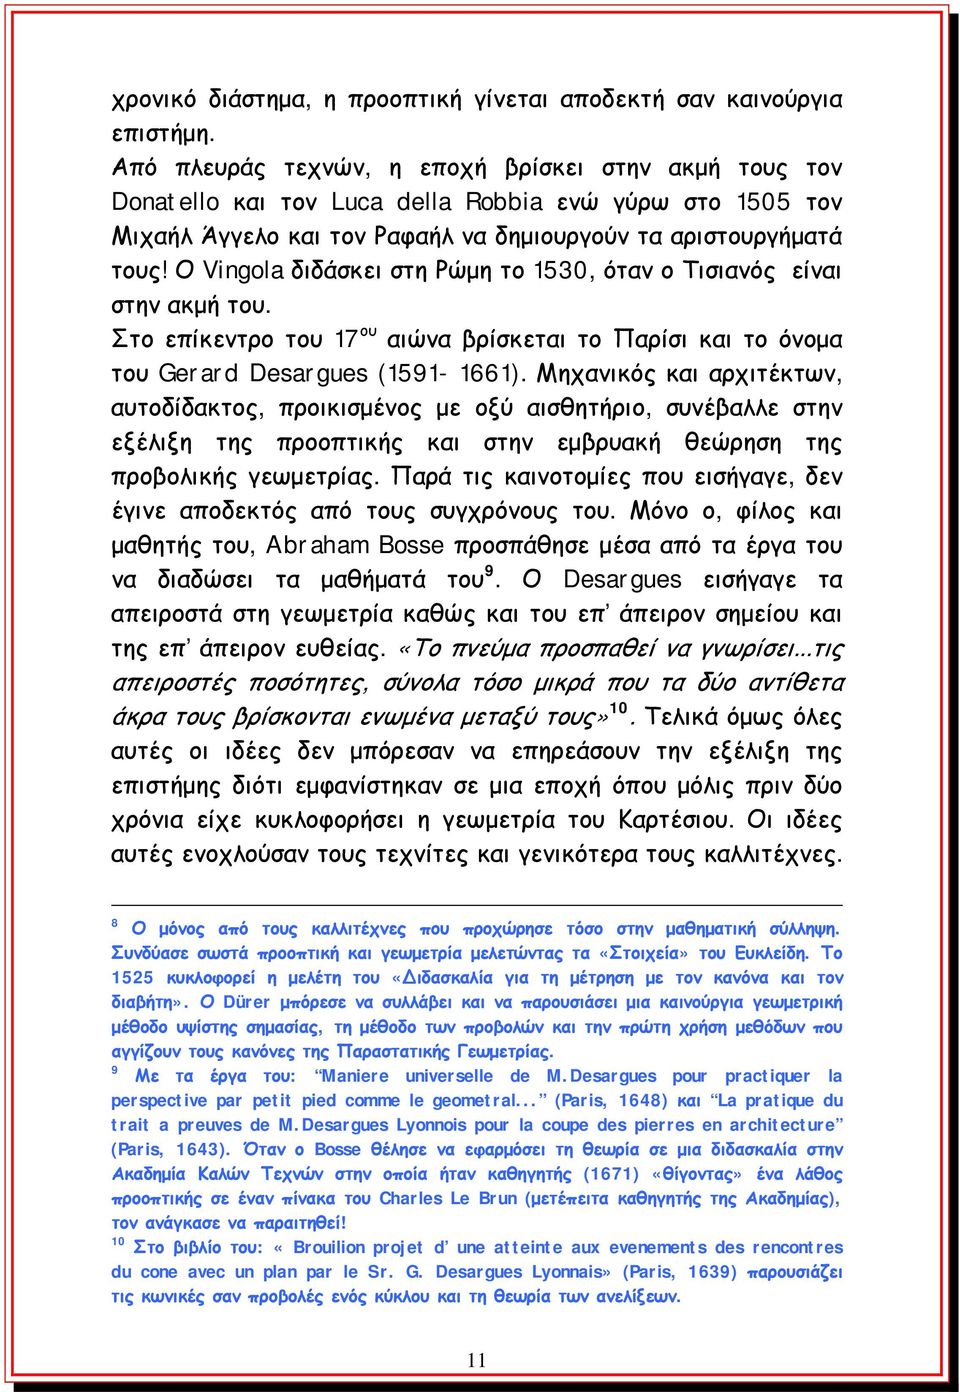 Ο Vingola διδάσκει στη Ρώμη το 1530, όταν ο Τισιανός είναι στην ακμή του. Στο επίκεντρο του 17 ου αιώνα βρίσκεται το Παρίσι και το όνομα του Gerard Desargues (1591-1661).